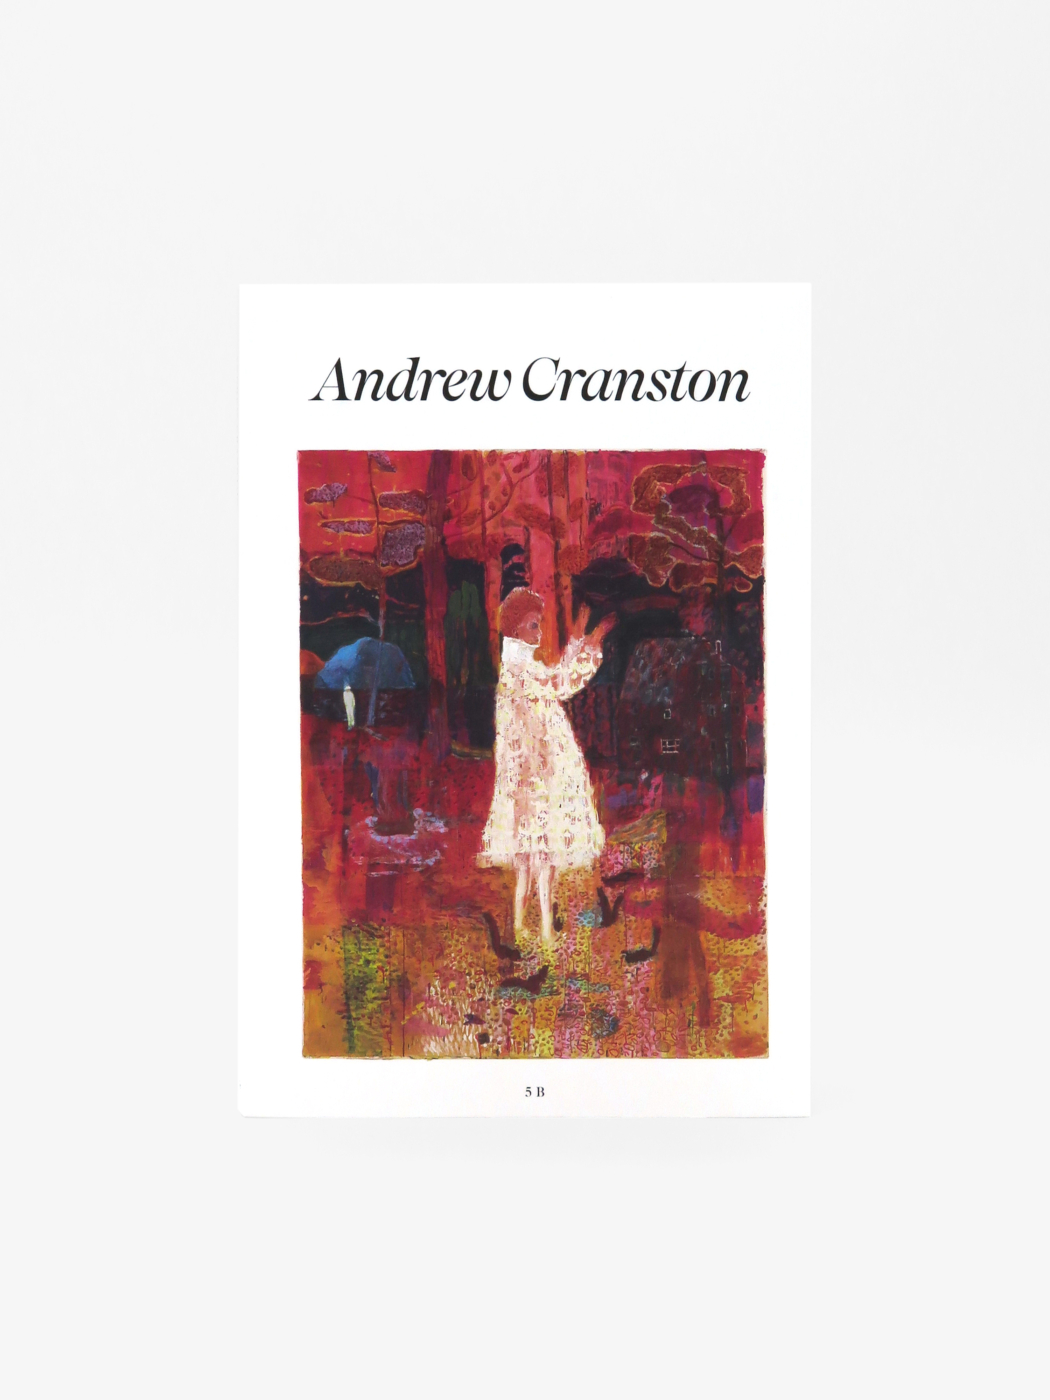 Andrew Cranston